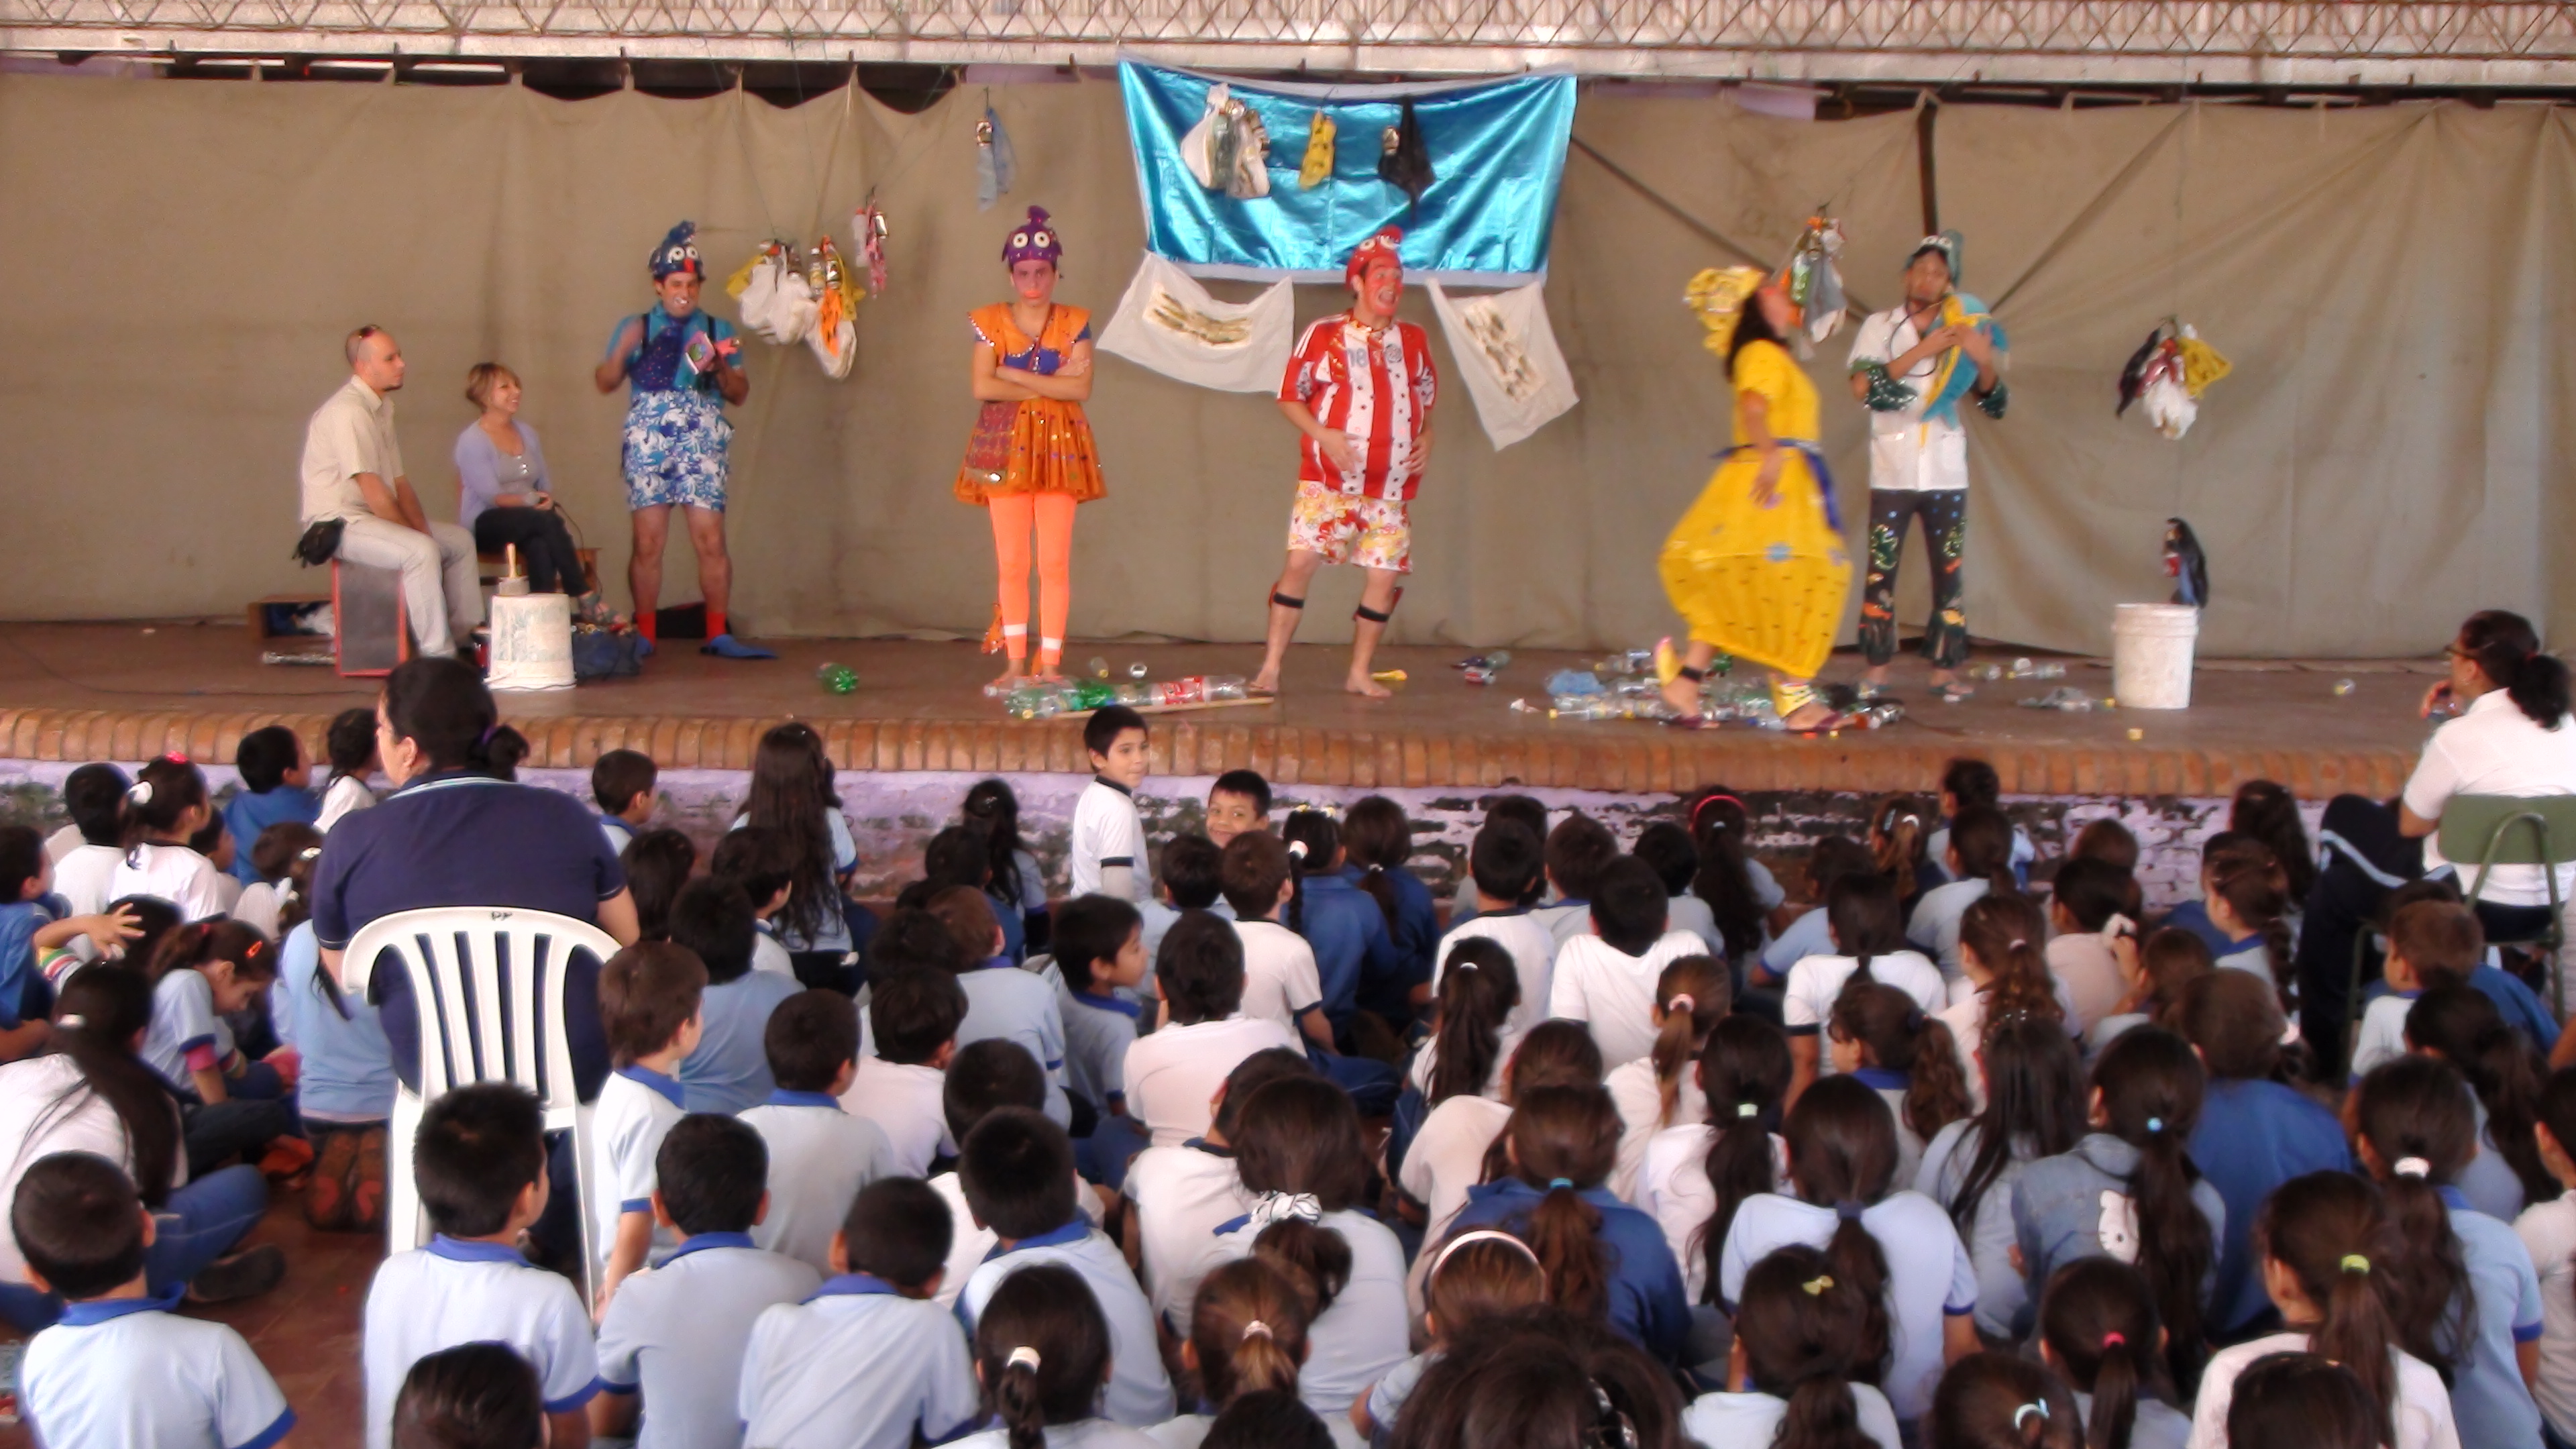 Presentación de la obra teatral “Salvemos al Lago” en las escuelas Aula Viva y Asunción Escalada. imagen